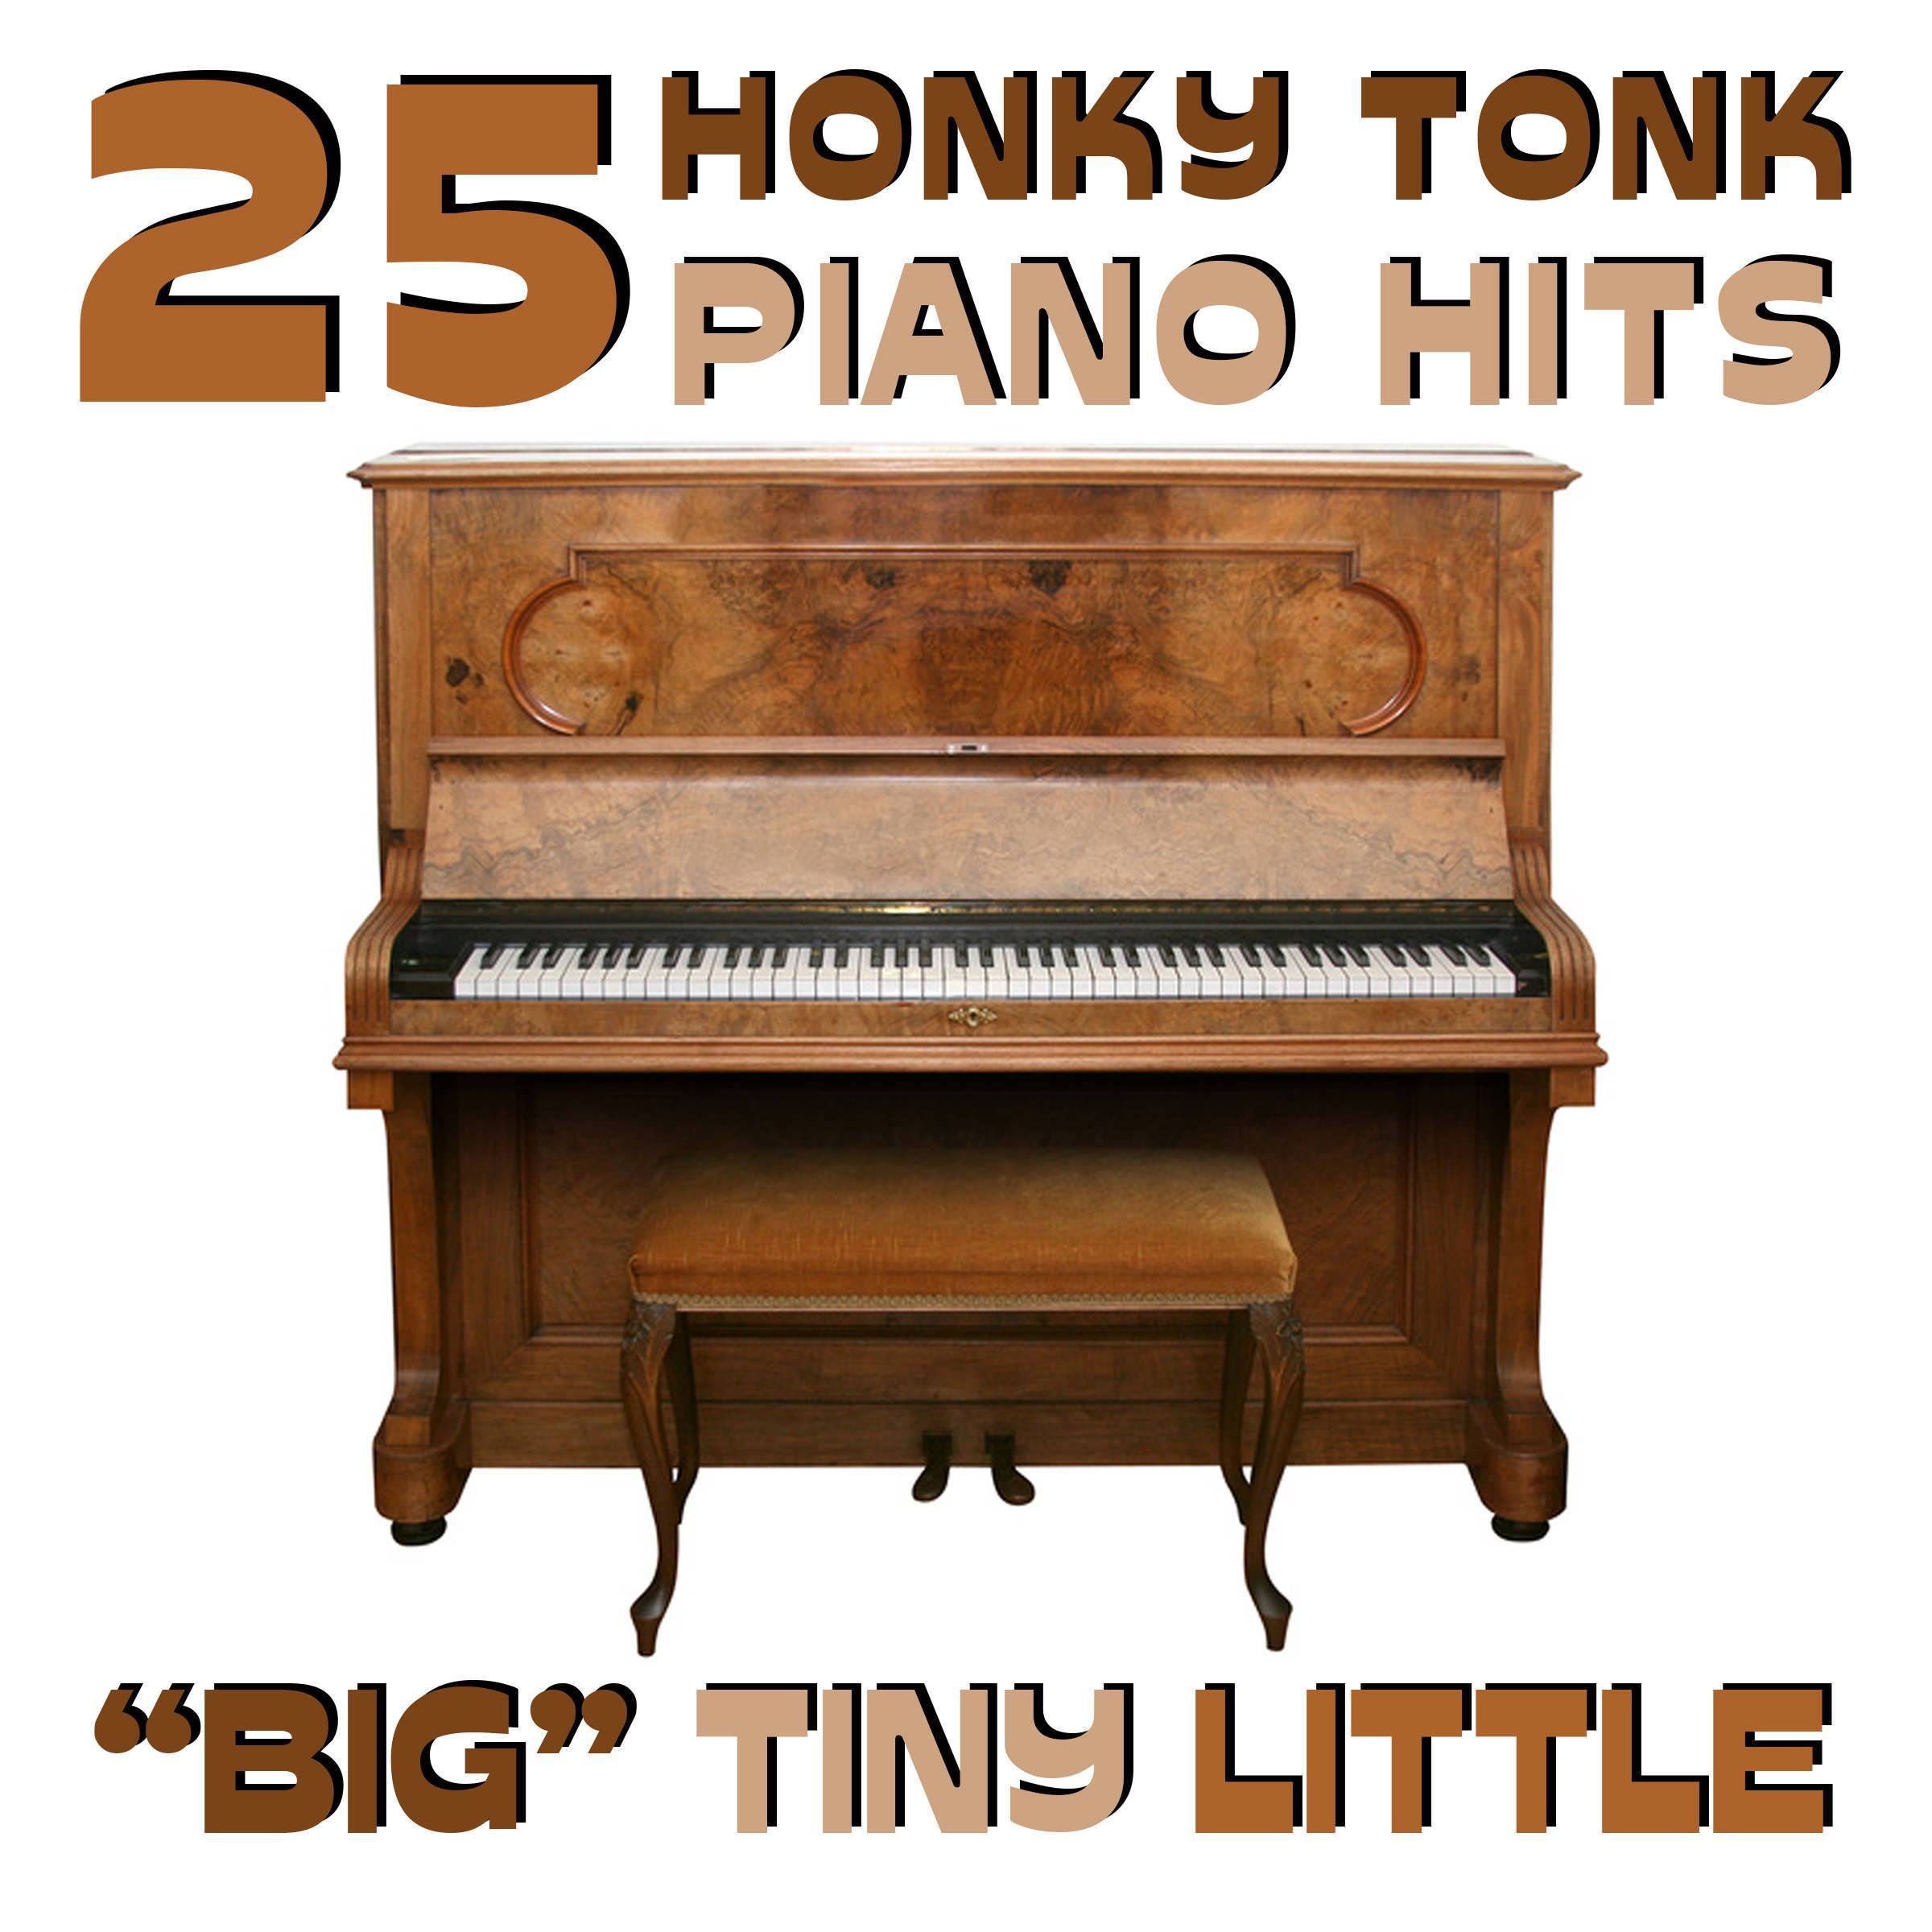 25 Honky Tonk Piano Hits